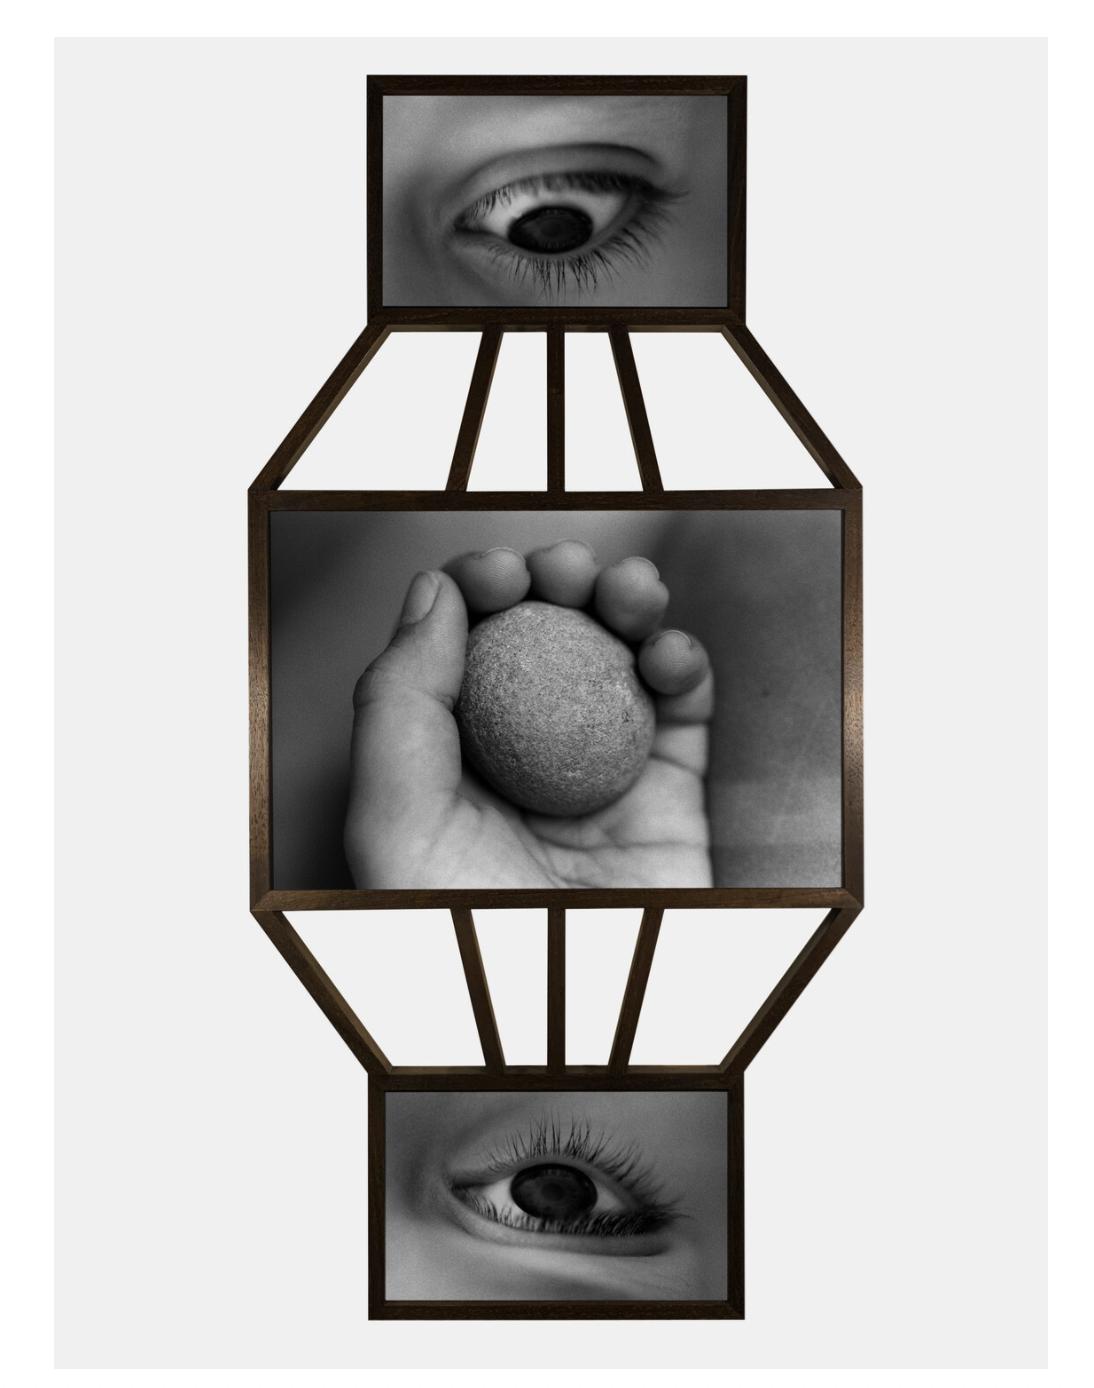 图二、《镜子大厅》，Maria Antelman， 2020